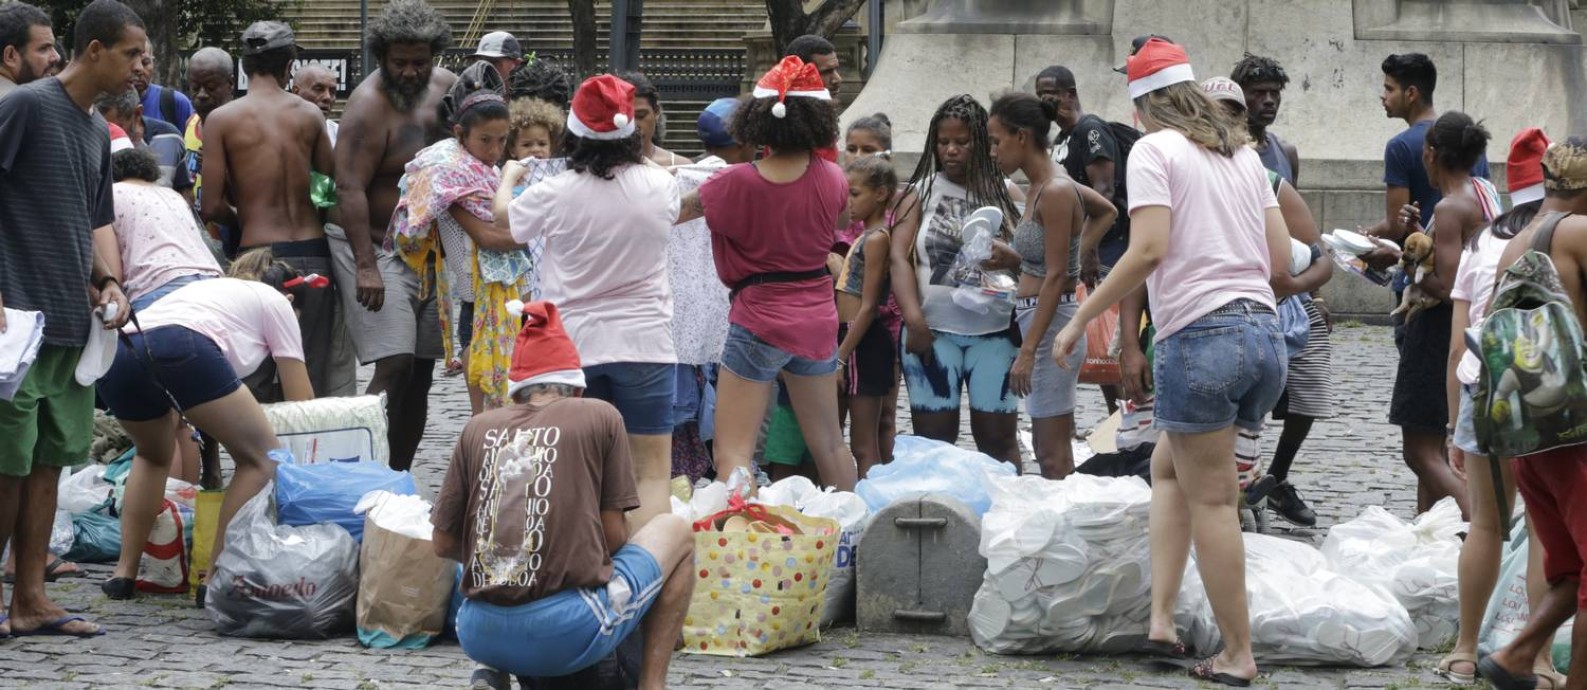 Distribuição de roupas e material de higiene na Cinelândia atrai dezenas de moradores de rua Foto: Domingos Peixoto / Agência O Globo